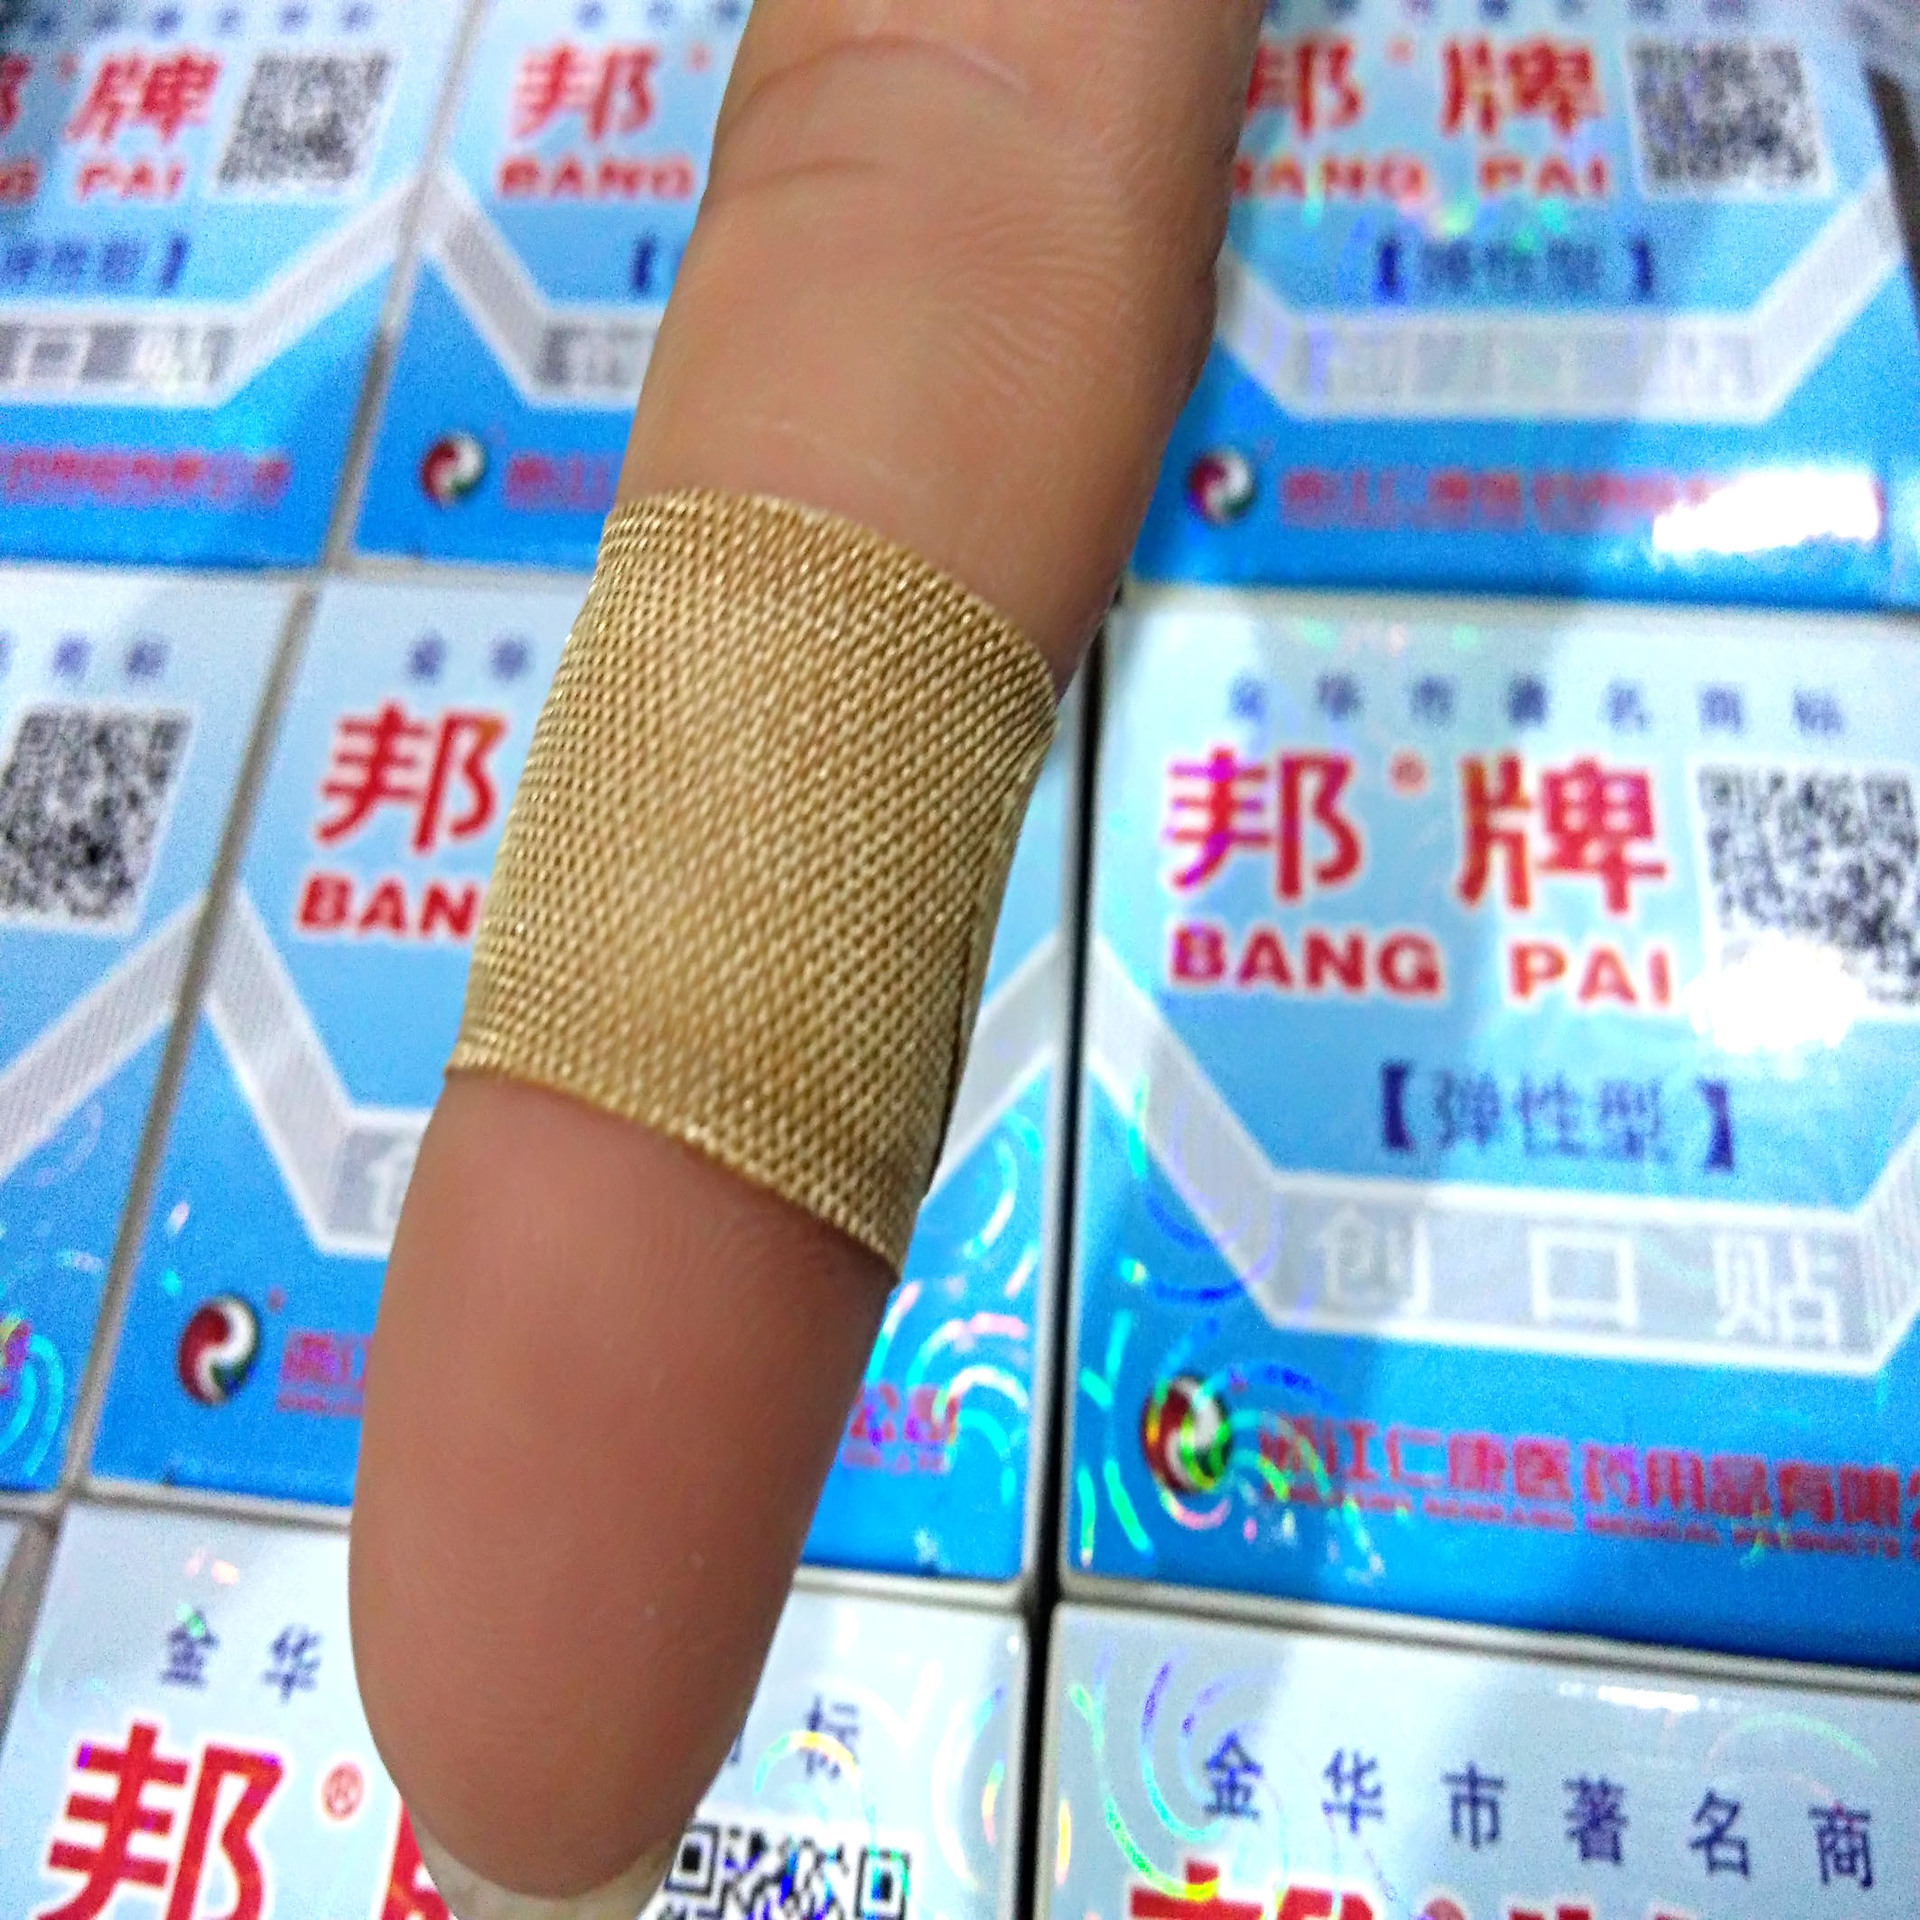 给手指贴创可贴-蓝牛仔影像-中国原创广告影像素材